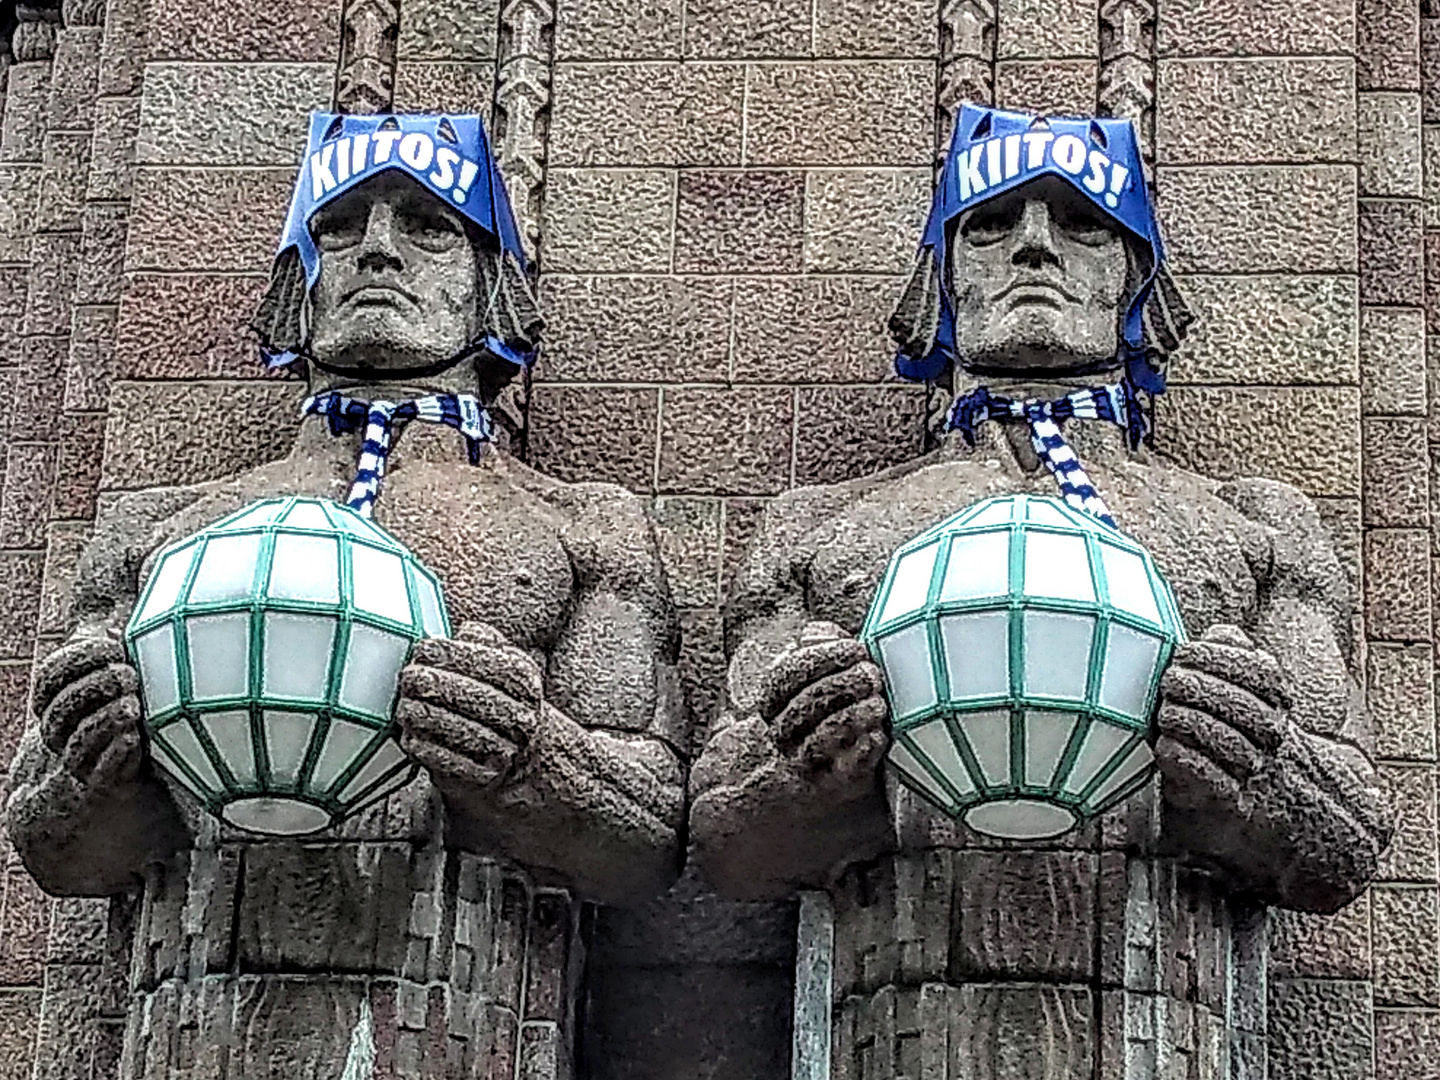 Helsinki feiert die Weltmeister